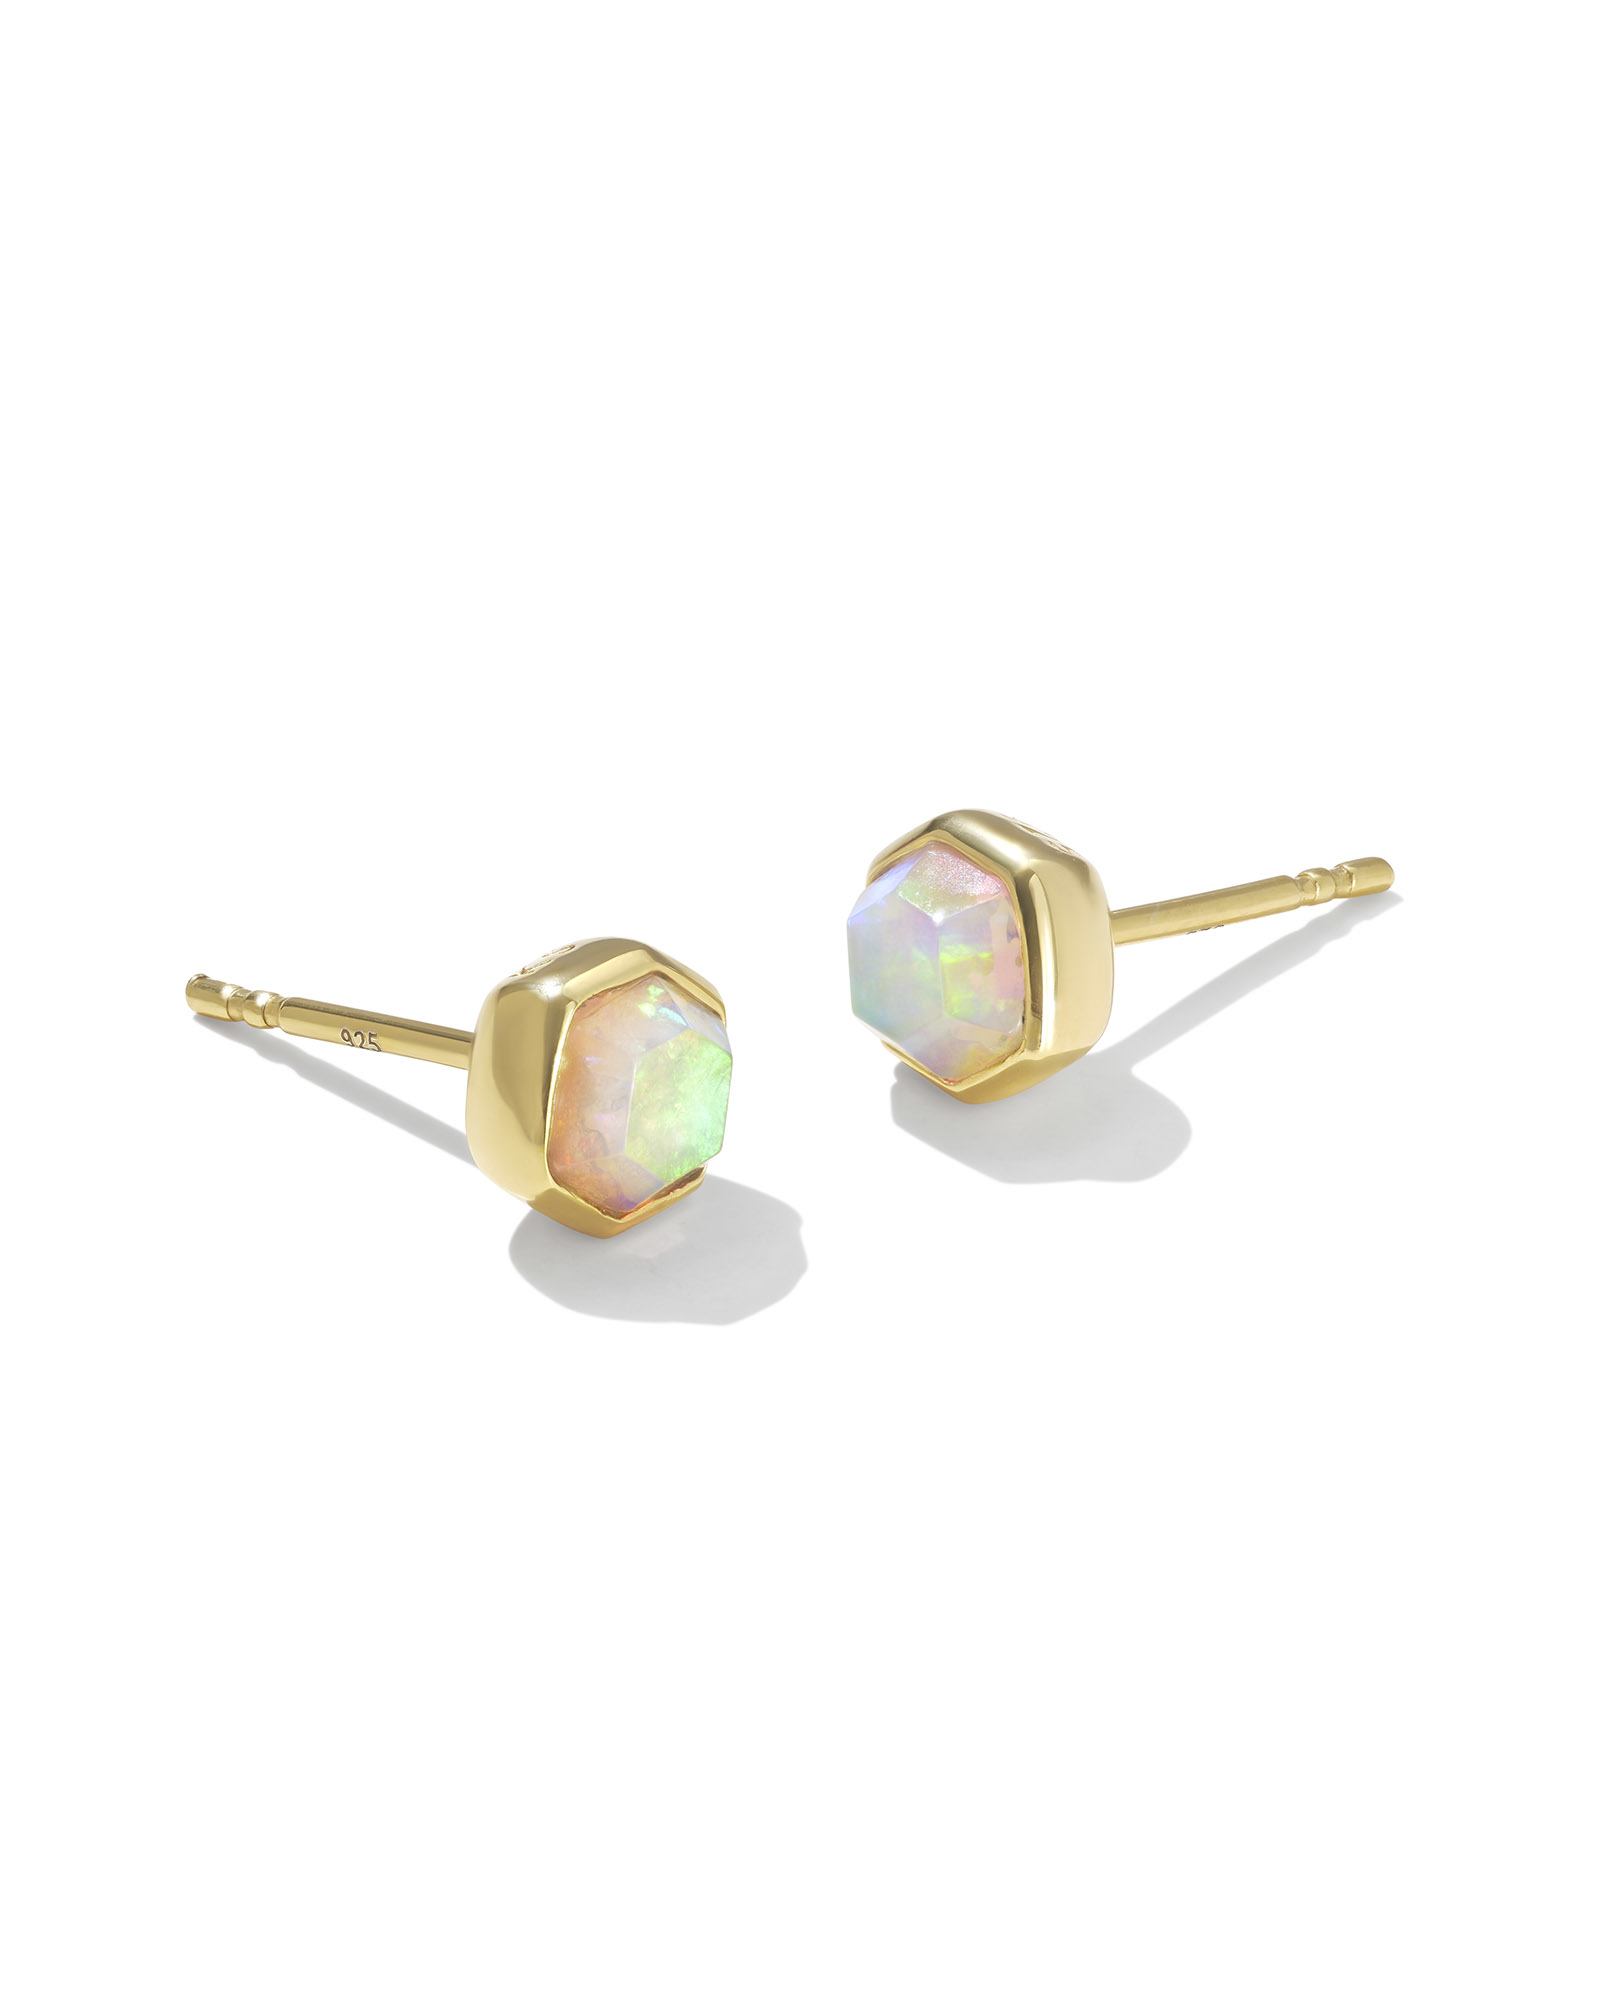 Davie 18k Gold Vermeil Stud Earrings in White Kyocera Opal